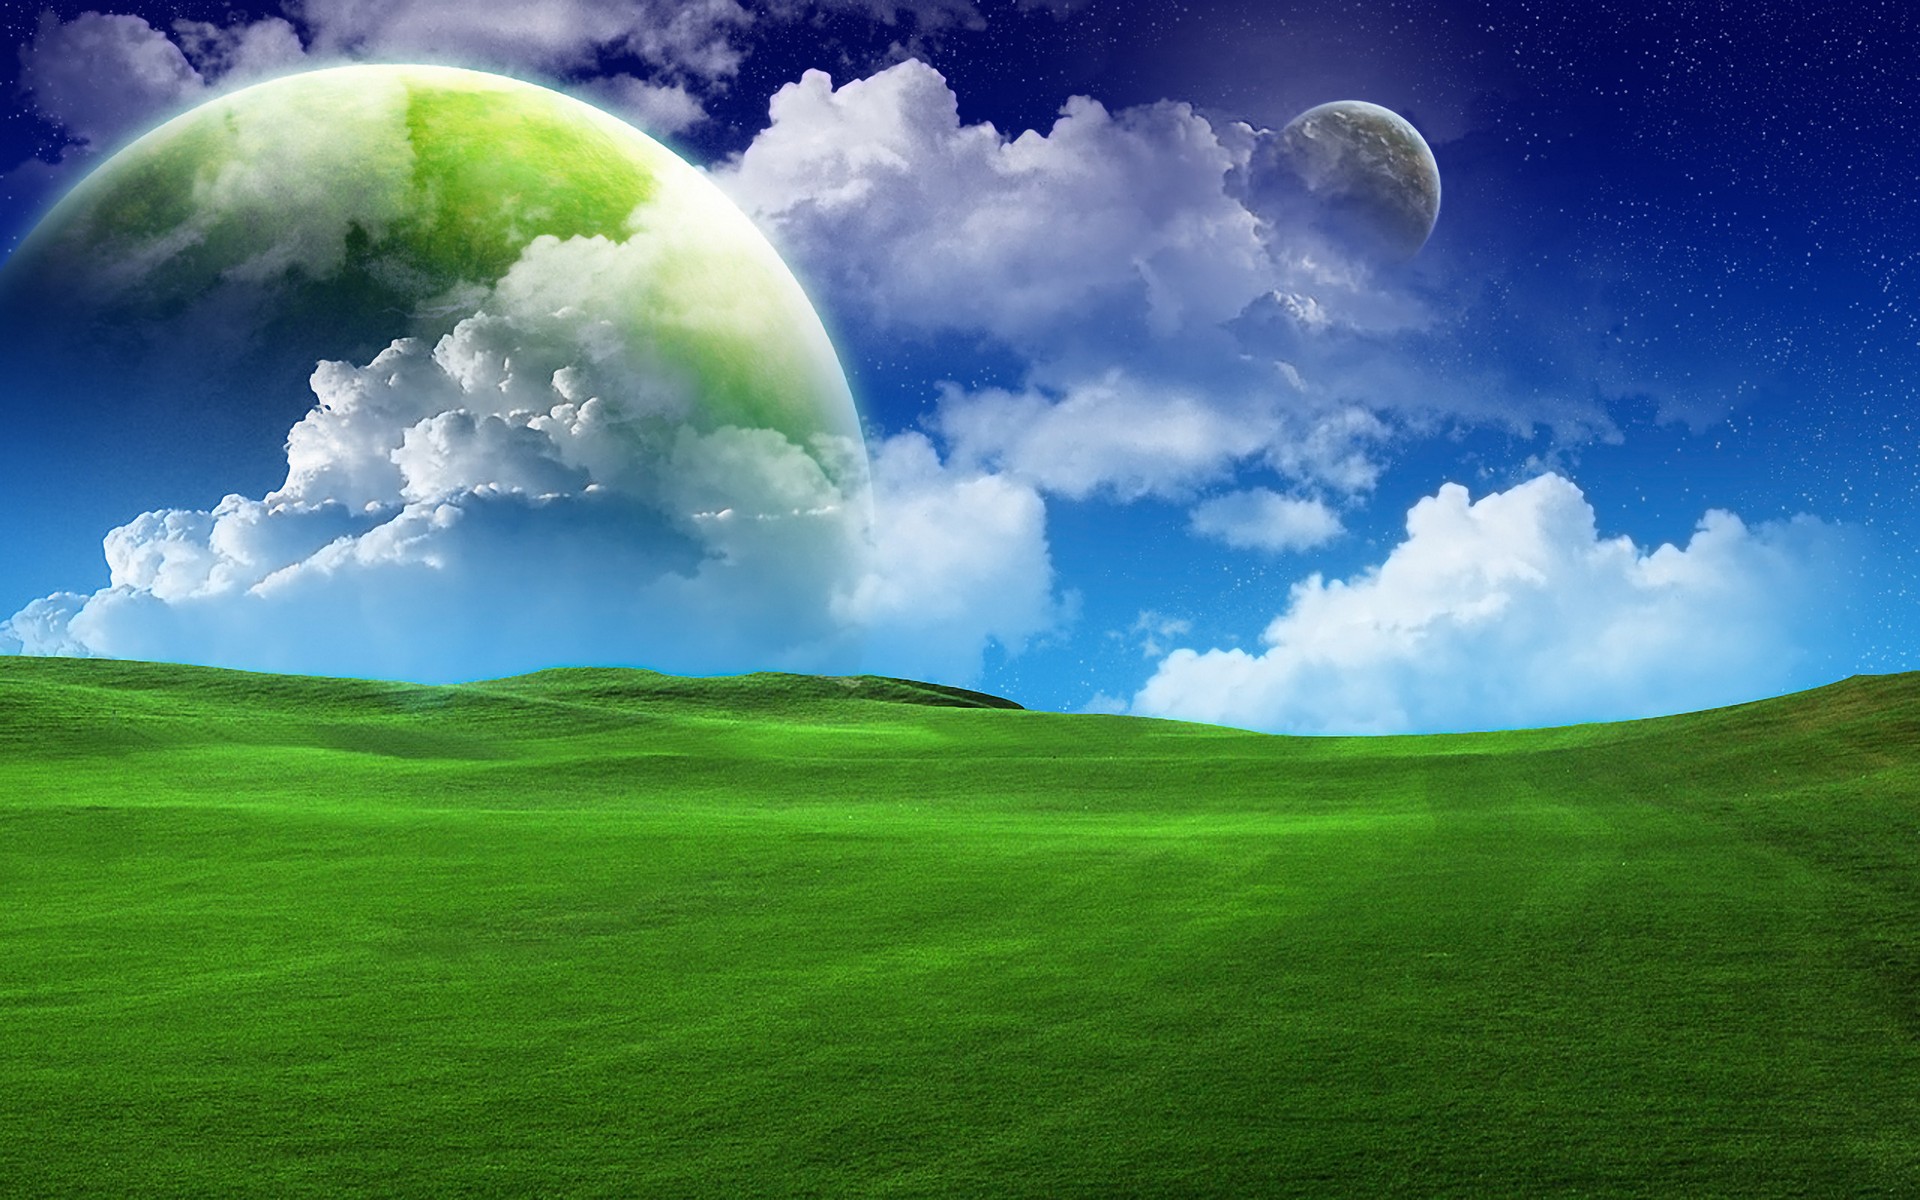 green, stars, landscape, field, sky, space, planet, sci fi, cloud